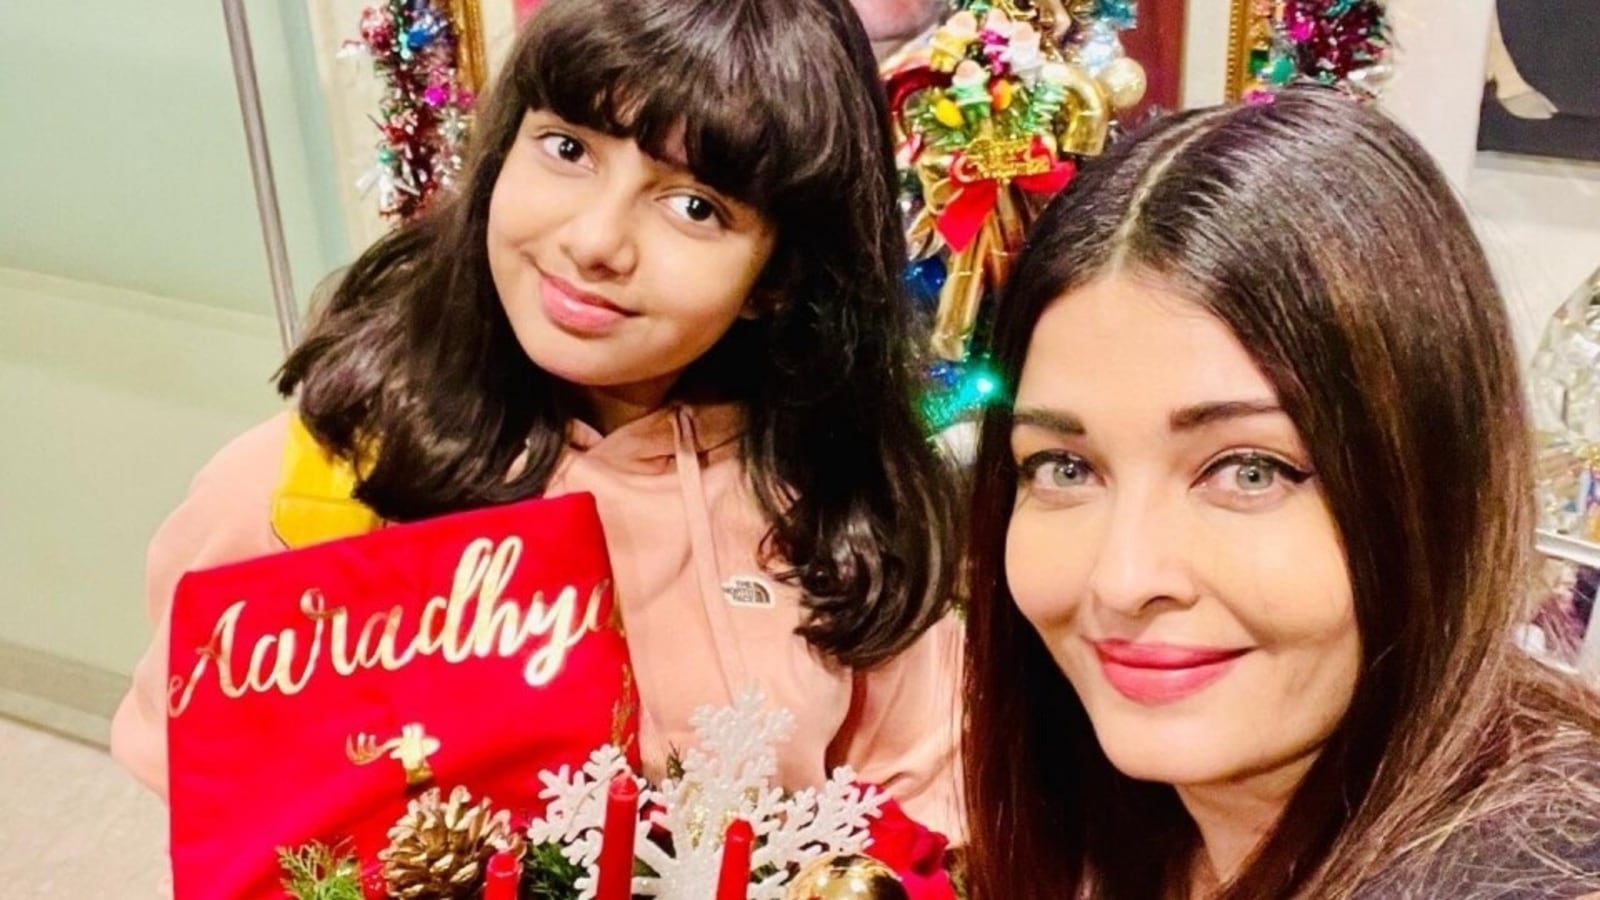 Aishwarya Rai Ka Bf Xxx - Aishwarya Rai celebrates Christmas with daughter Aaradhya Bachchan, shares  an adorable pic: Check out the post inside - Hindustan Times